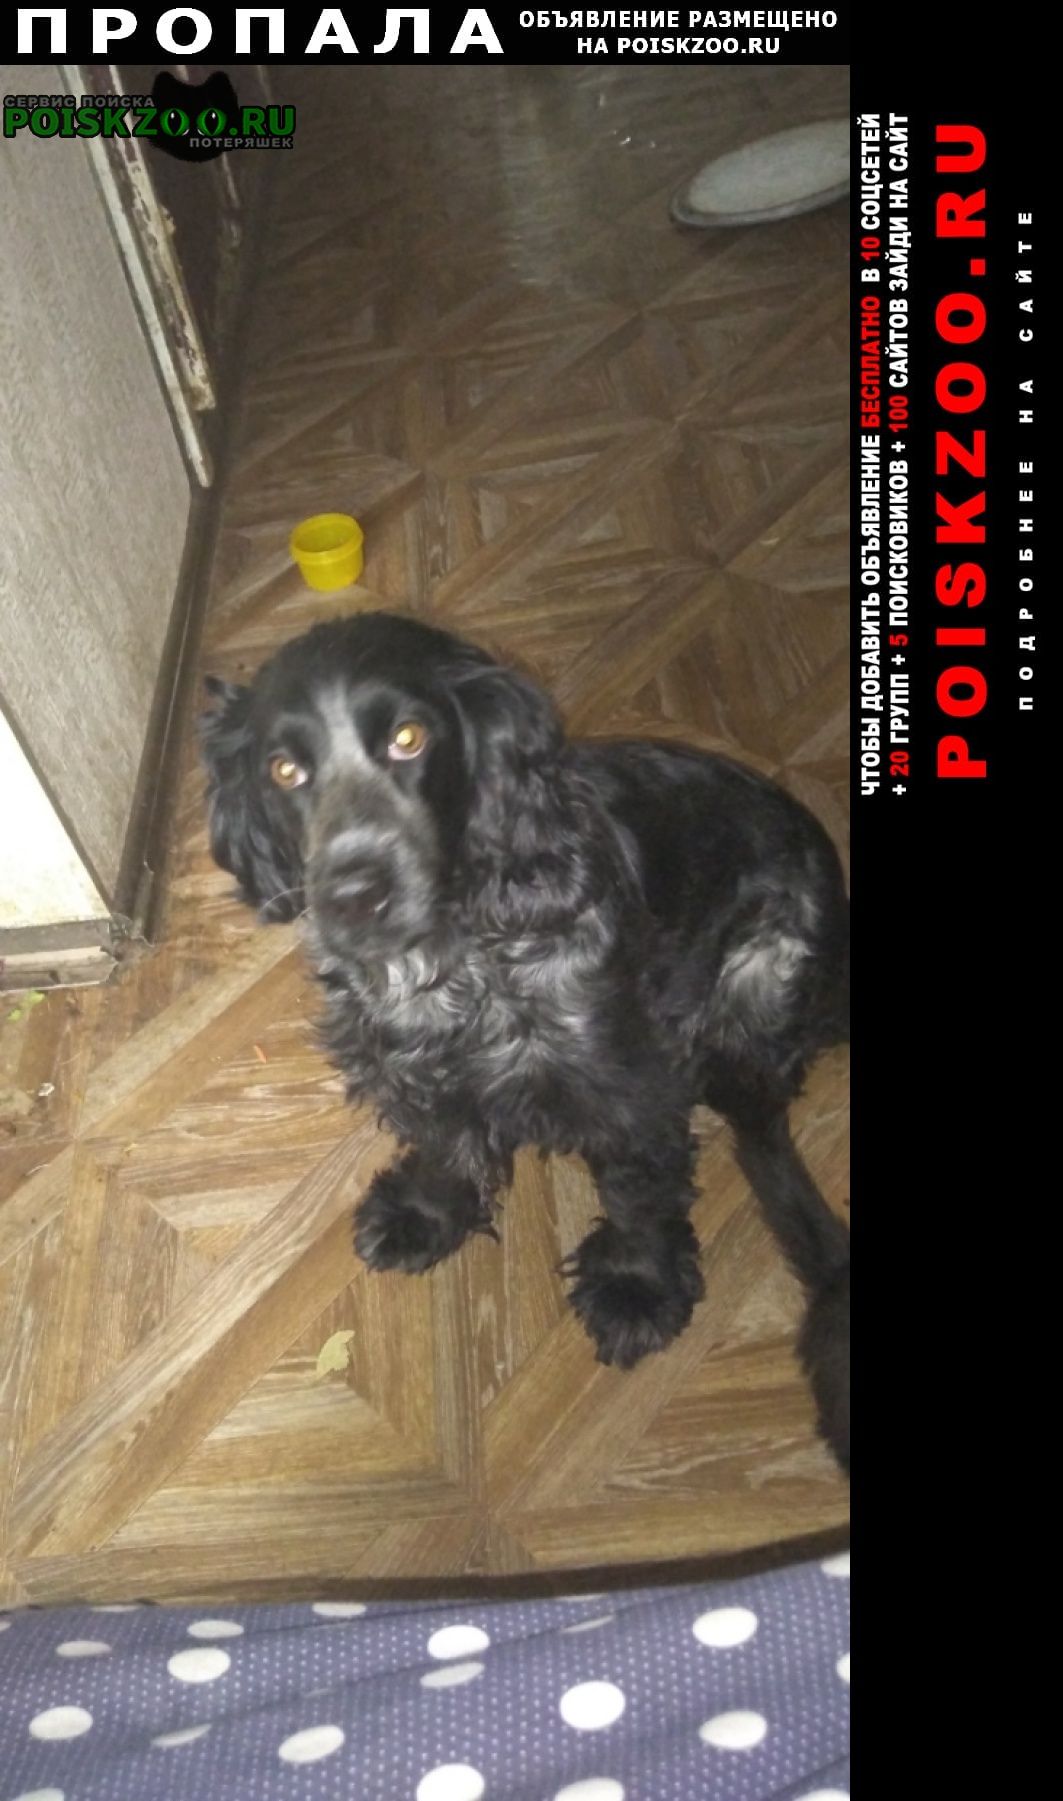 Пропала собака Саранск